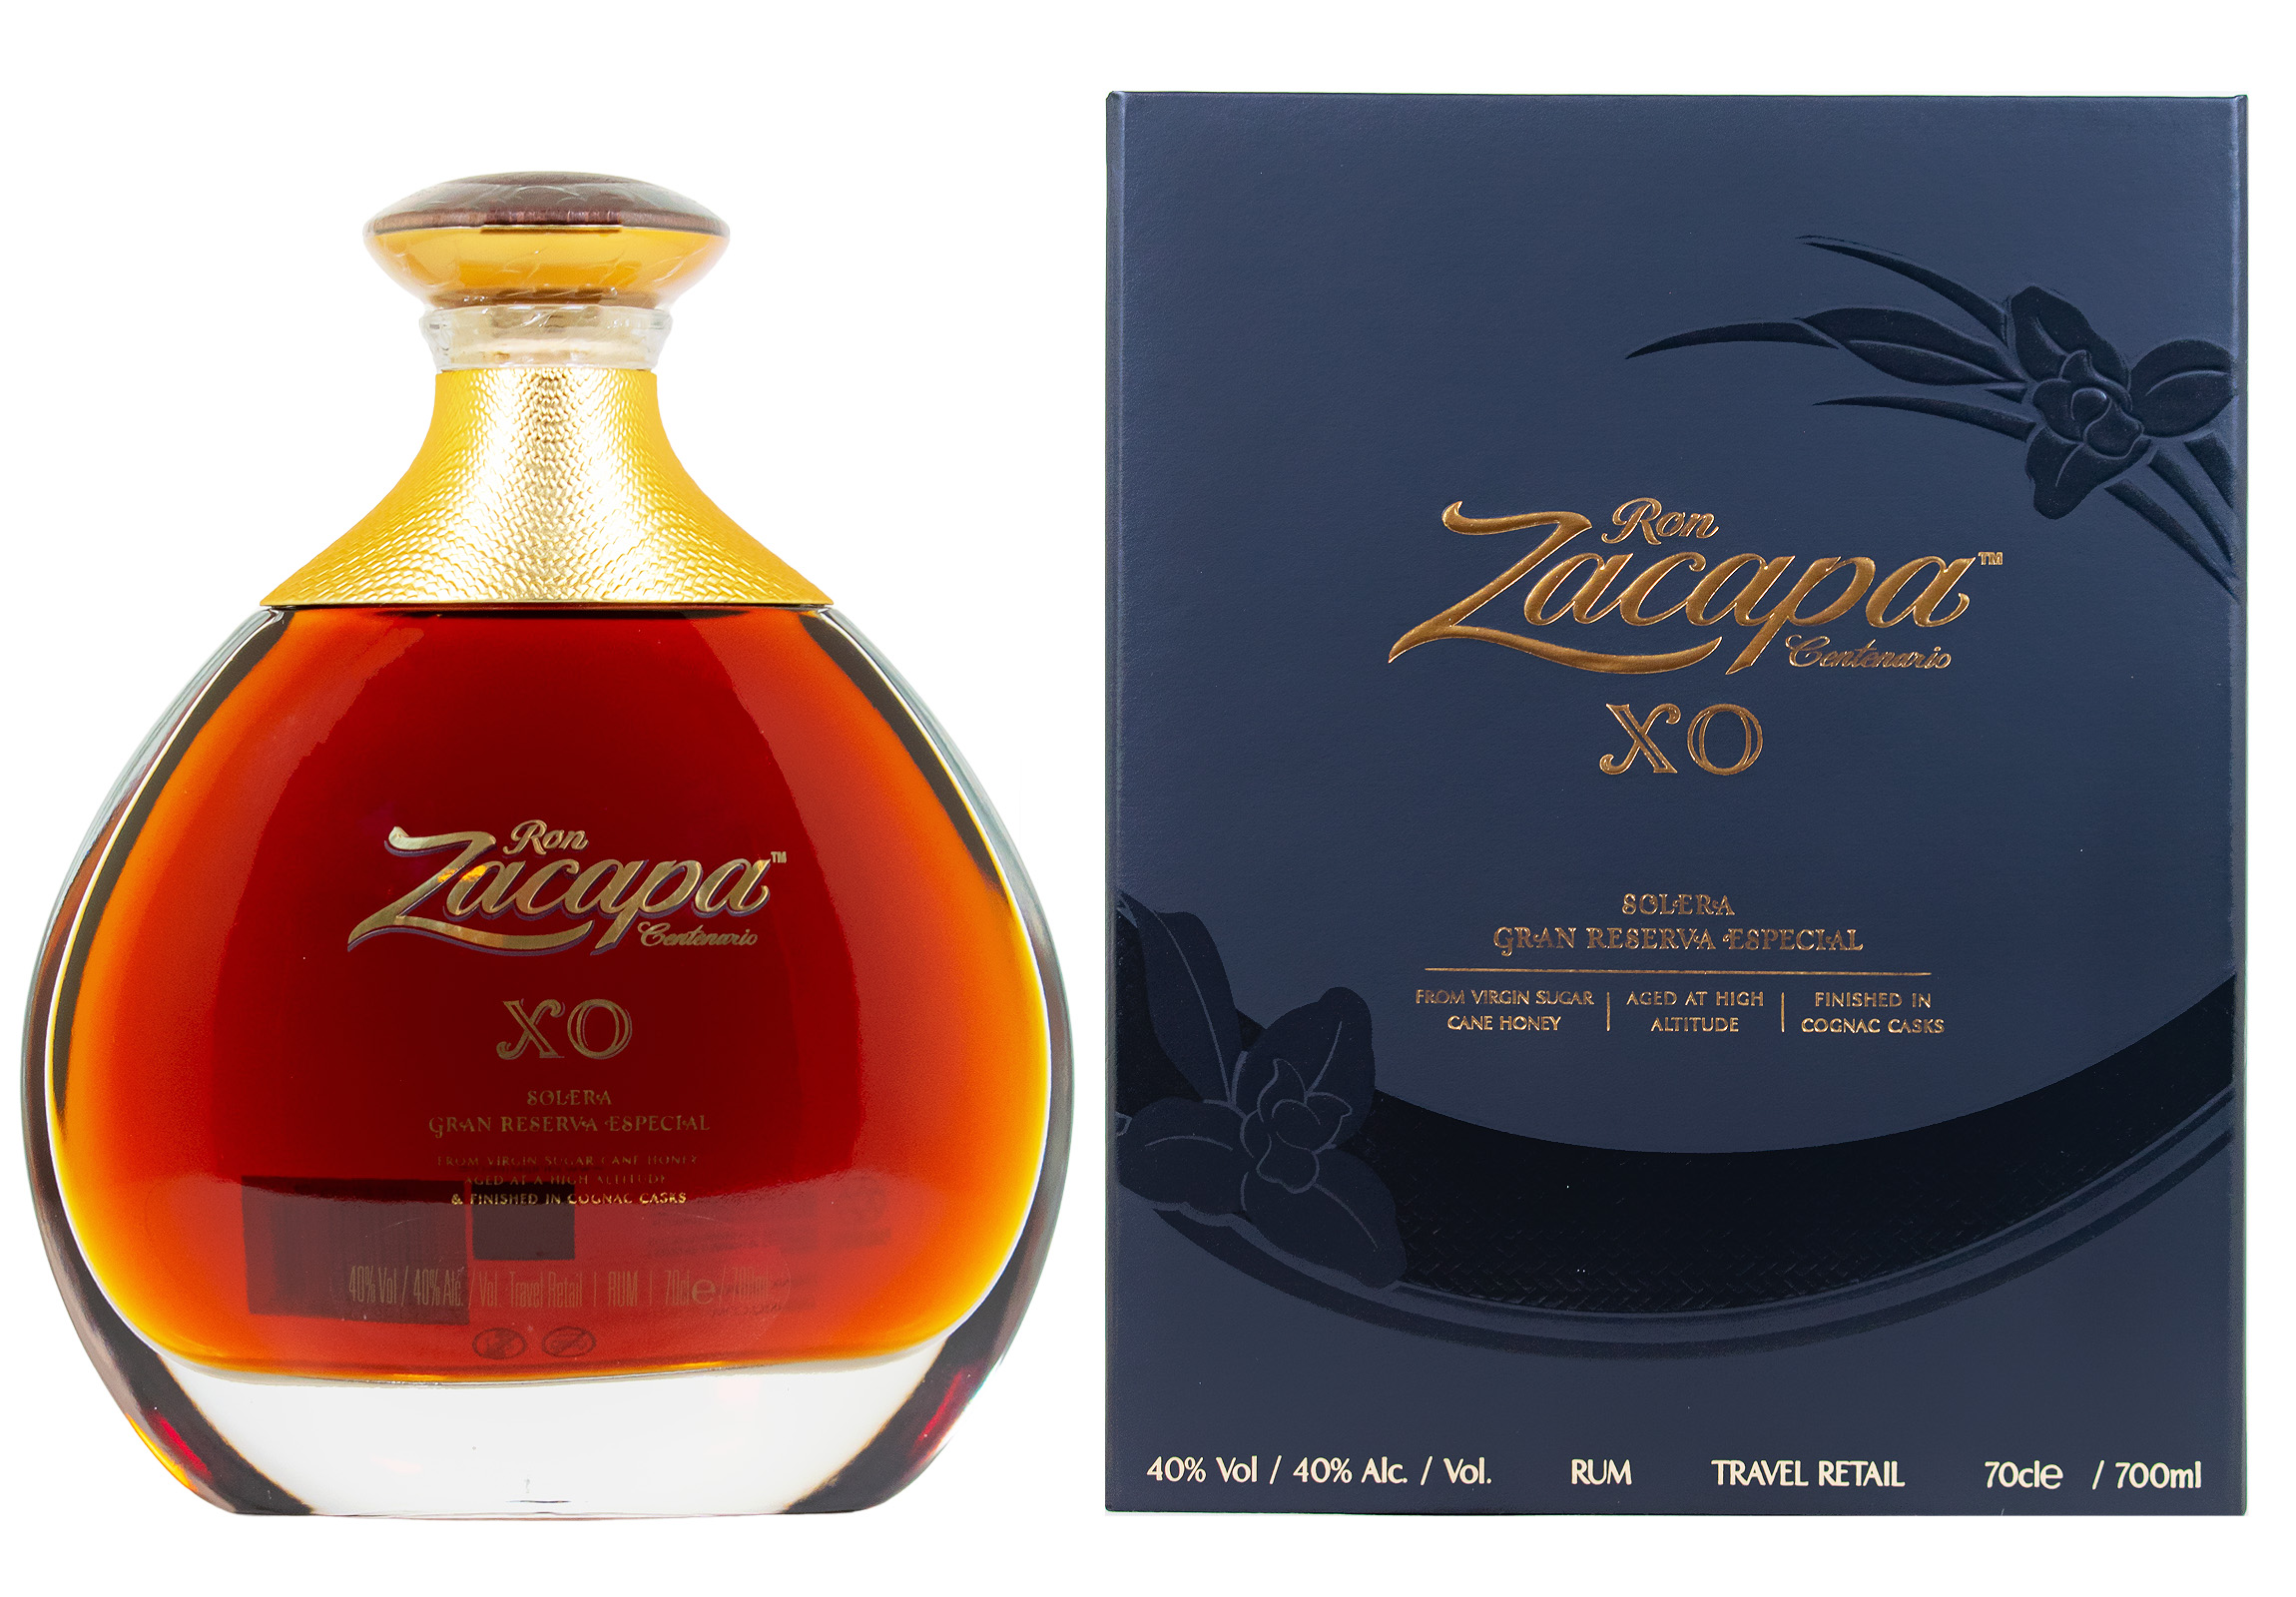 Ron Zacapa XO Solera Gran Reserva Especial Rum